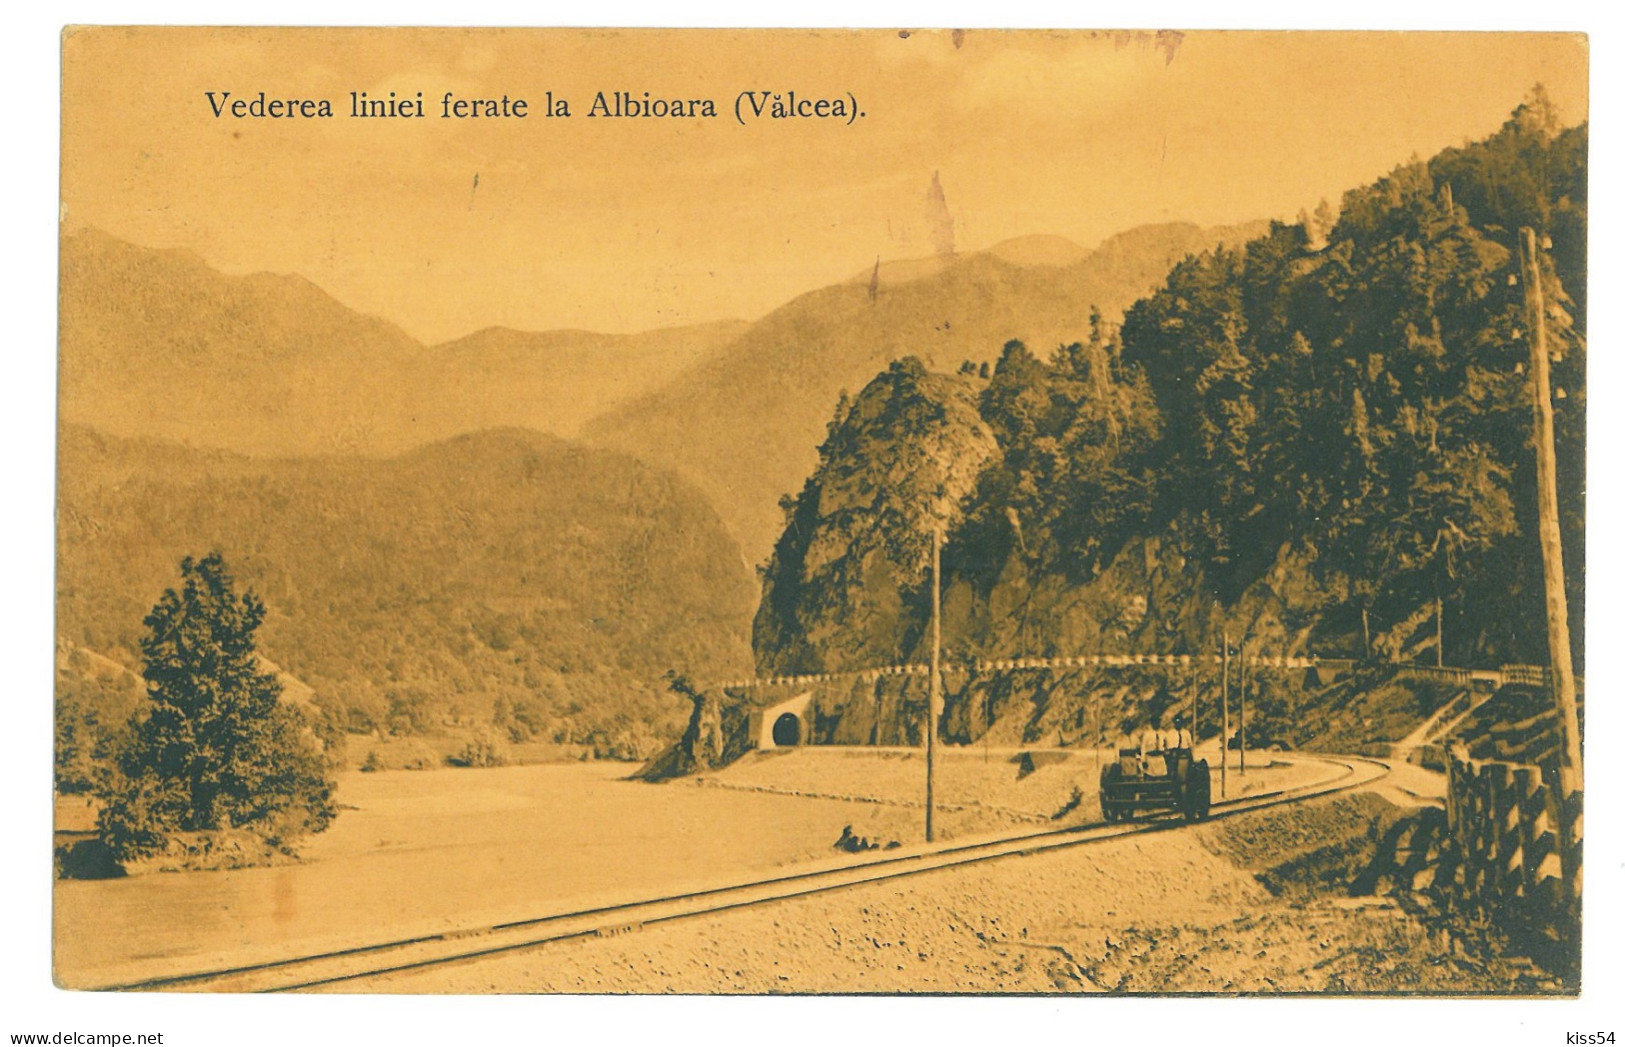 RO 40 - 22676 VALCEA, Valea Oltului, Drezina, Railway Tunnel, Romania - Old Postcard - Used - 1912 - Roemenië